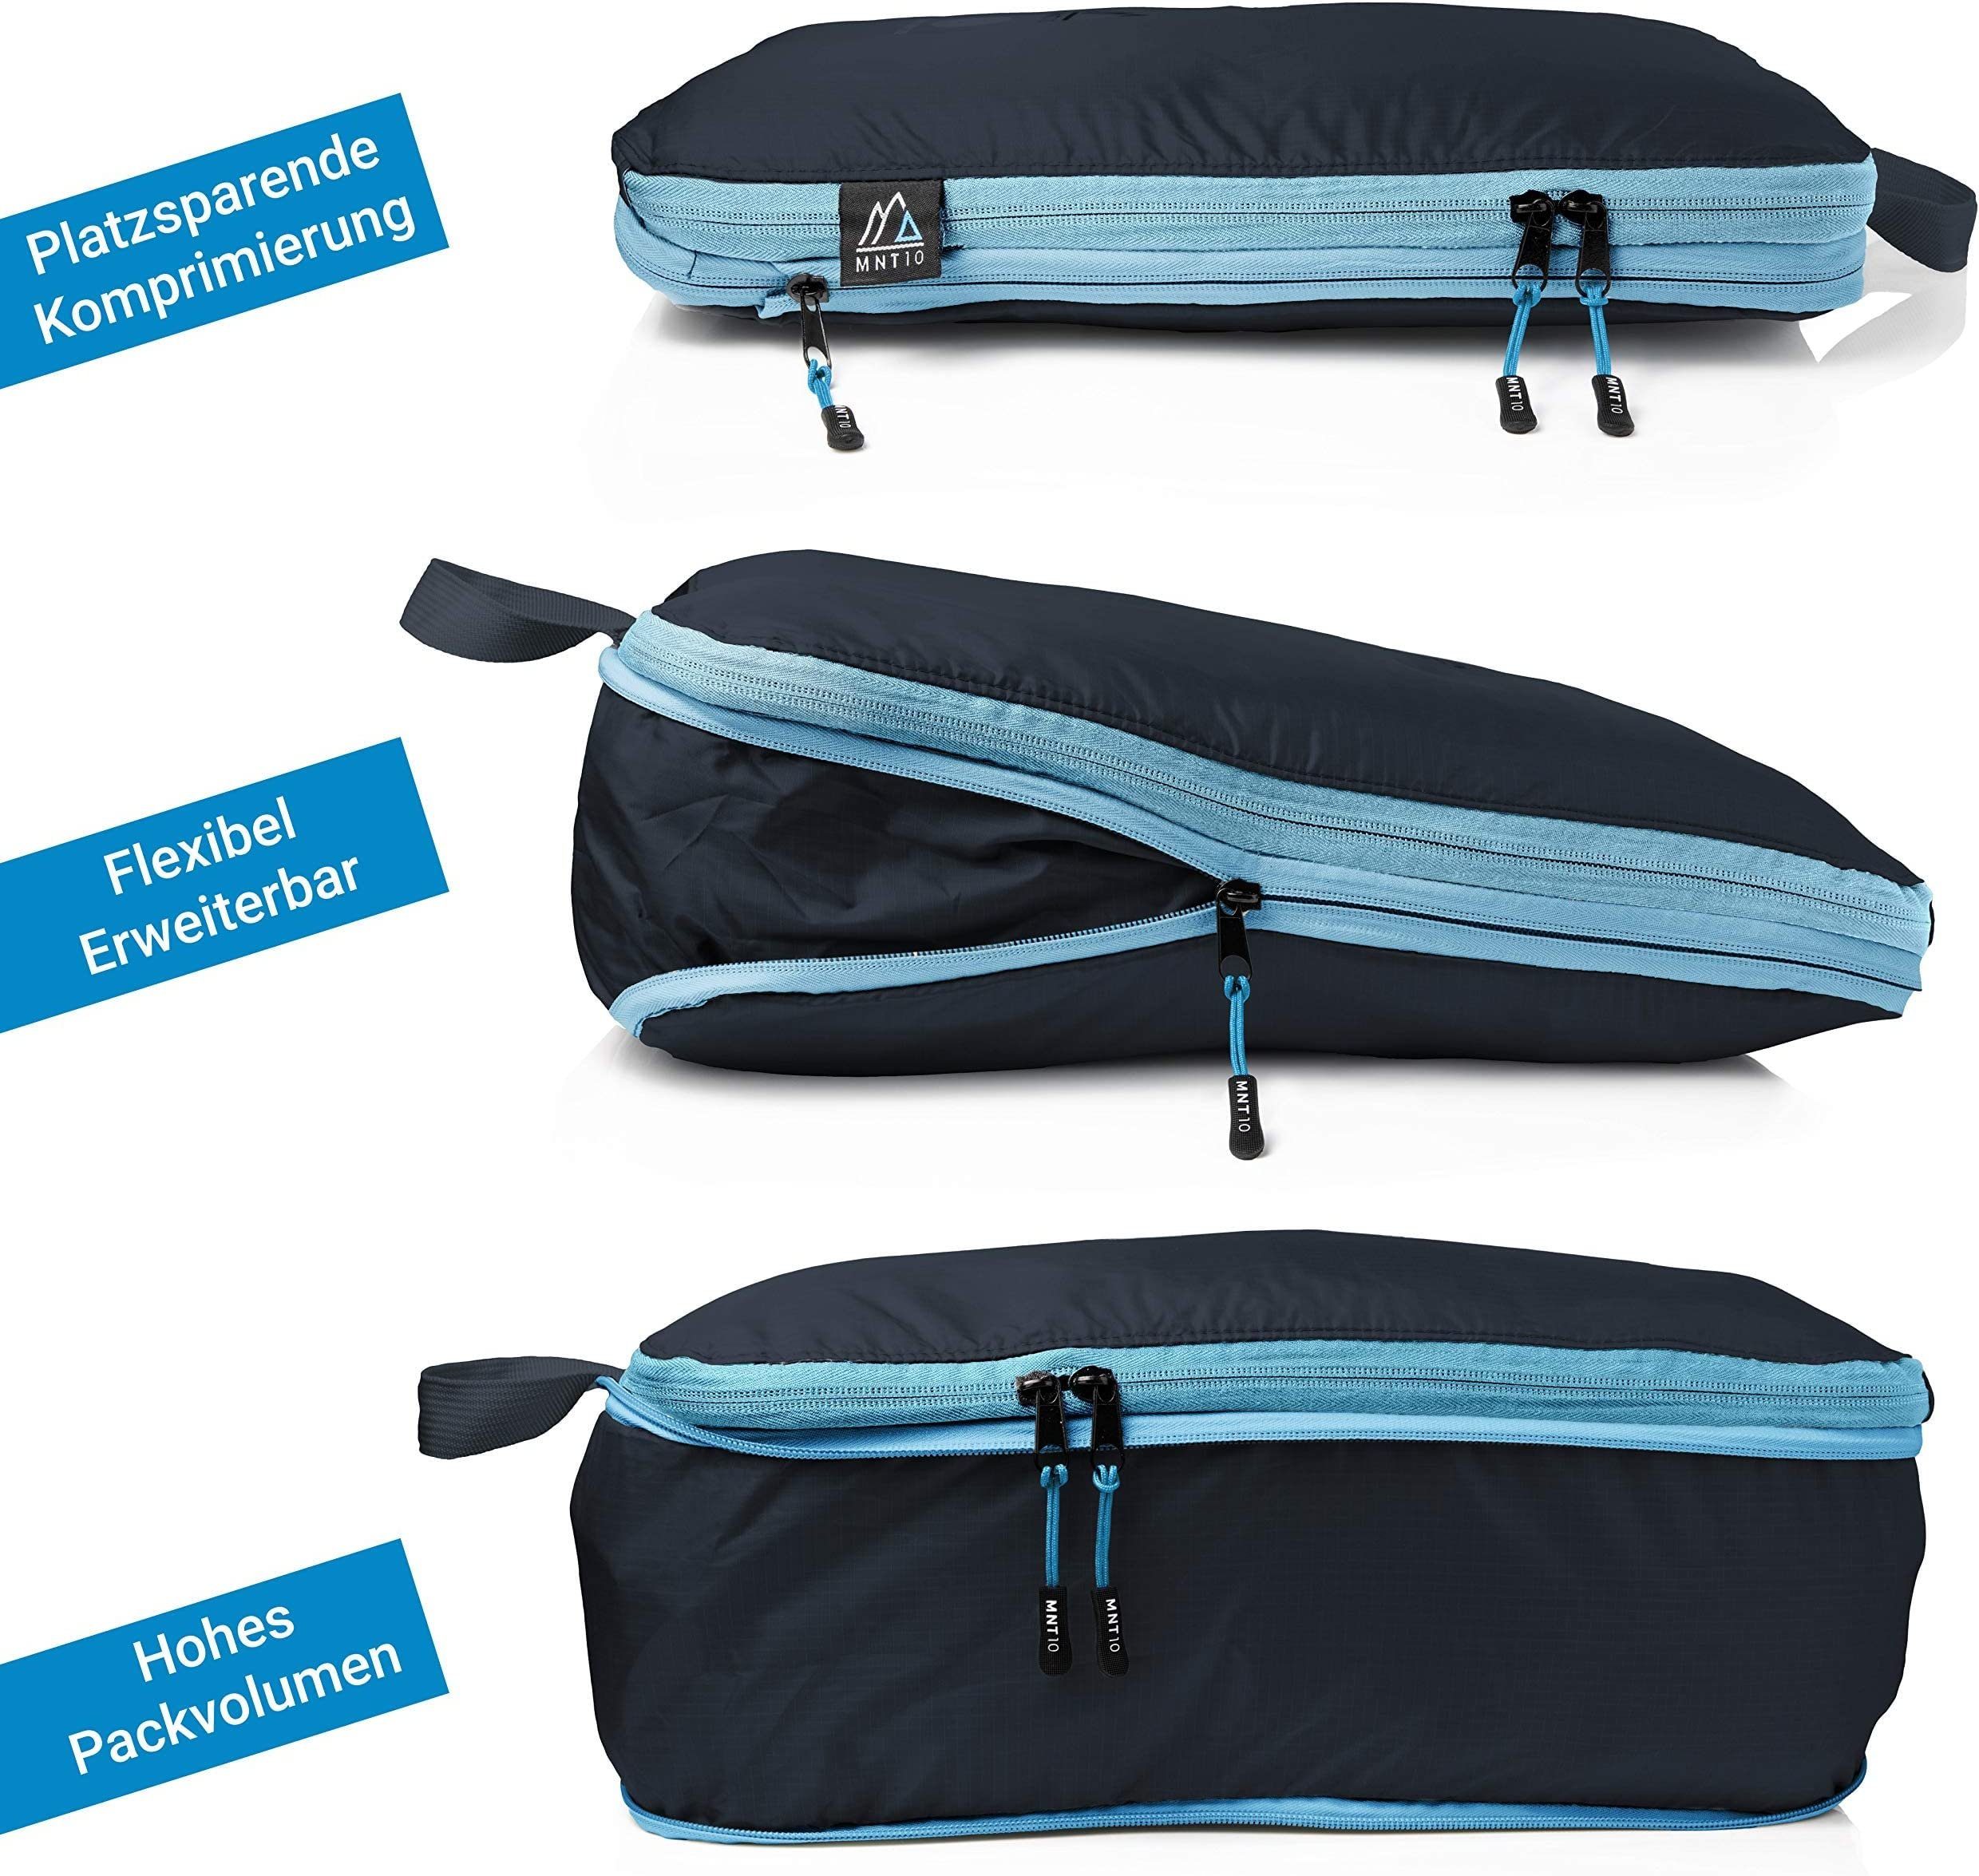 MNT10 Kofferorganizer Packtaschen Mit Kompression XL, leichte Blau, als Koffer-Organizer mit Kompressionsbeutel, Schlaufe Kompressionsbeutel M, I L, S